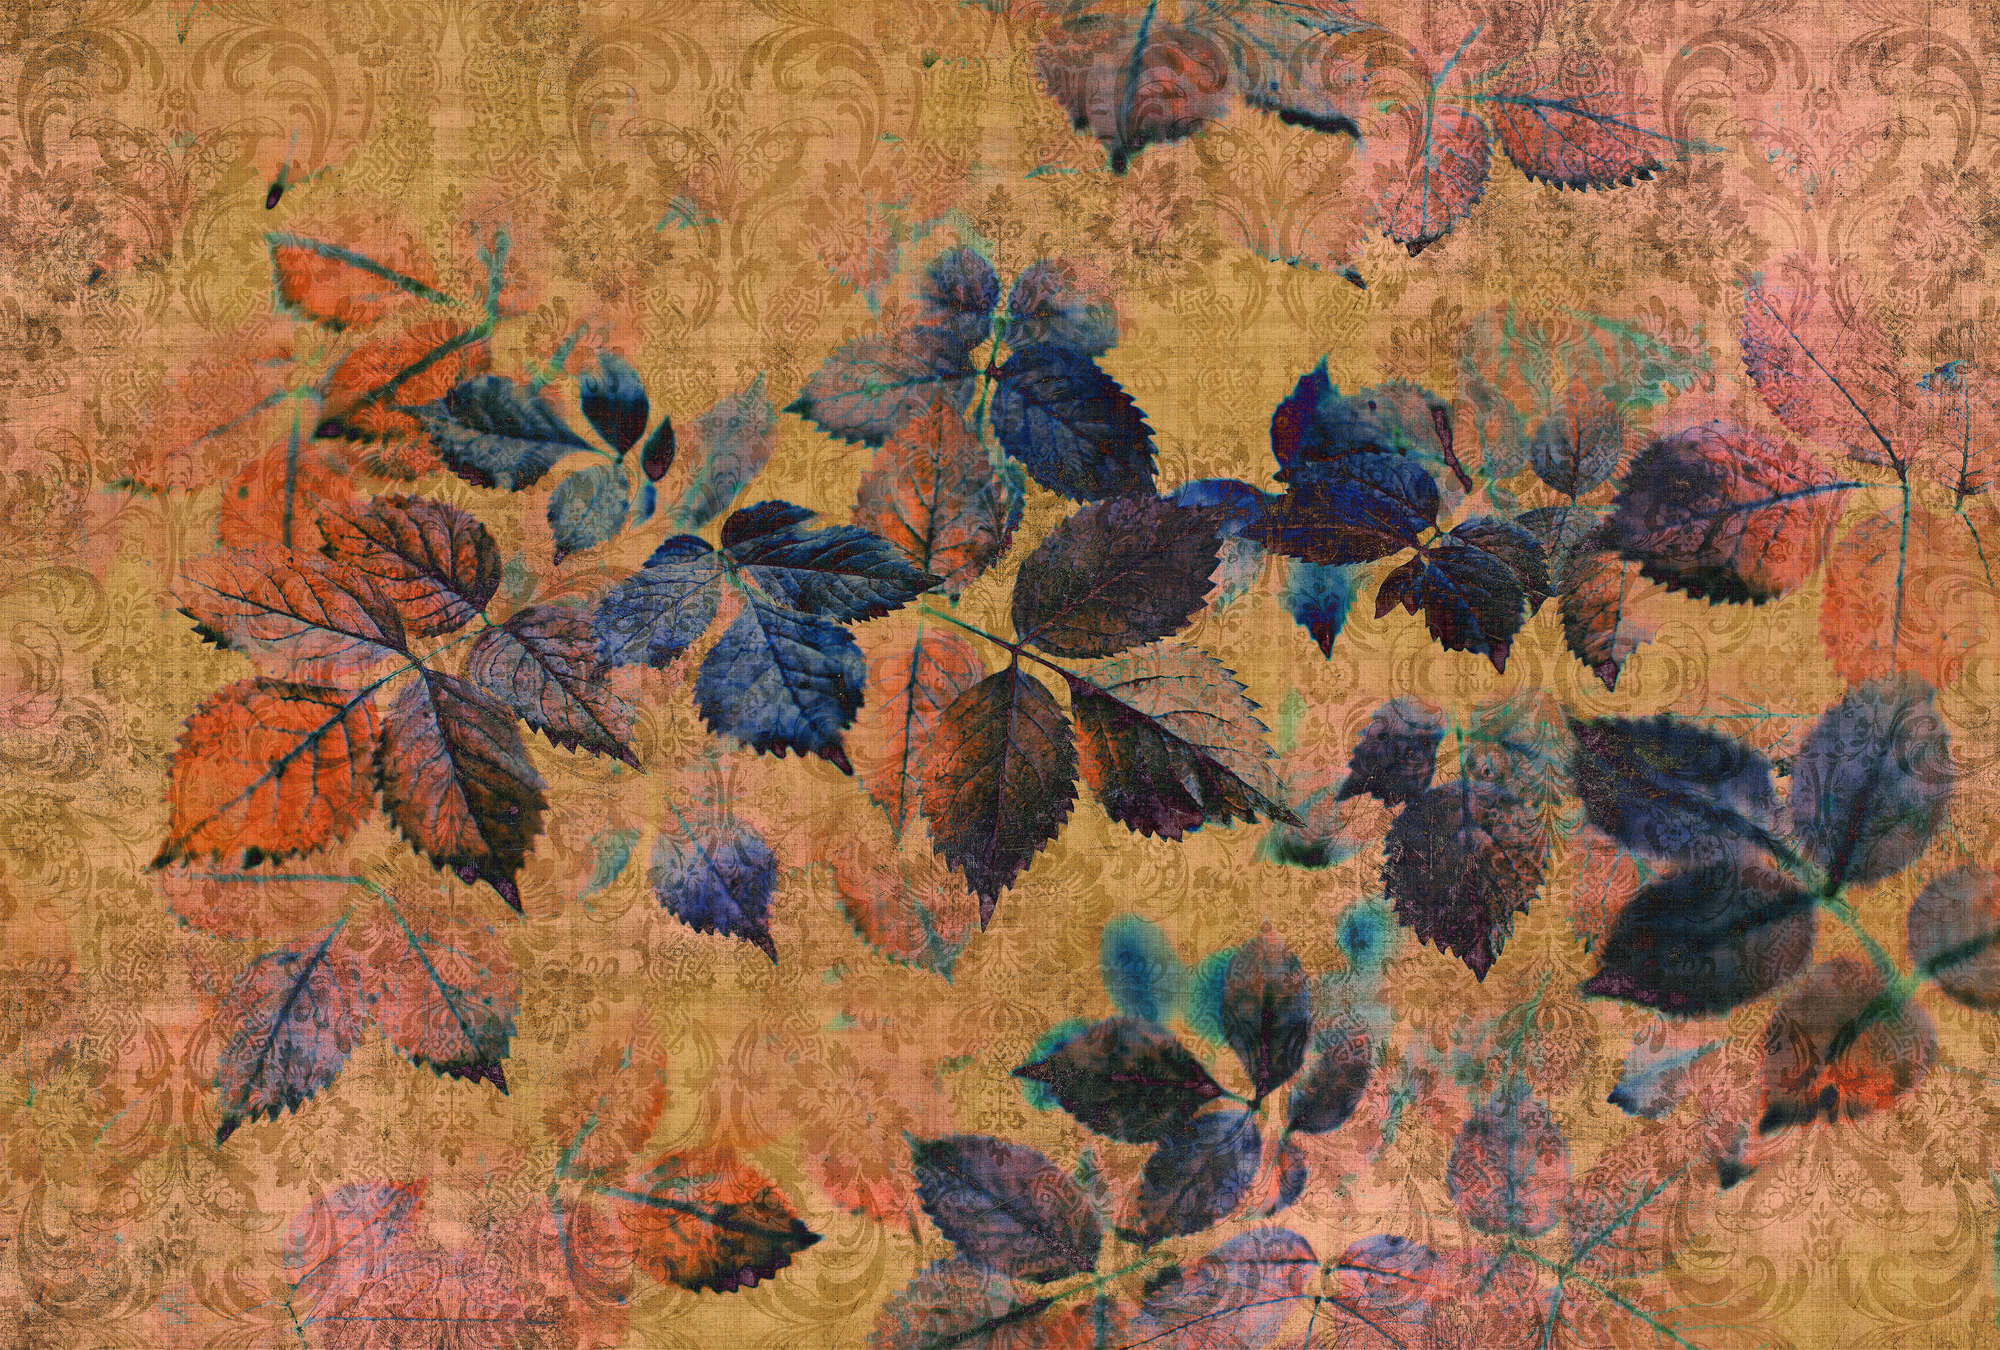             Verano indio 2 - Papel pintado floral en estructura de lino natural con ambiente cálido - Amarillo, Naranja | Nácar liso
        